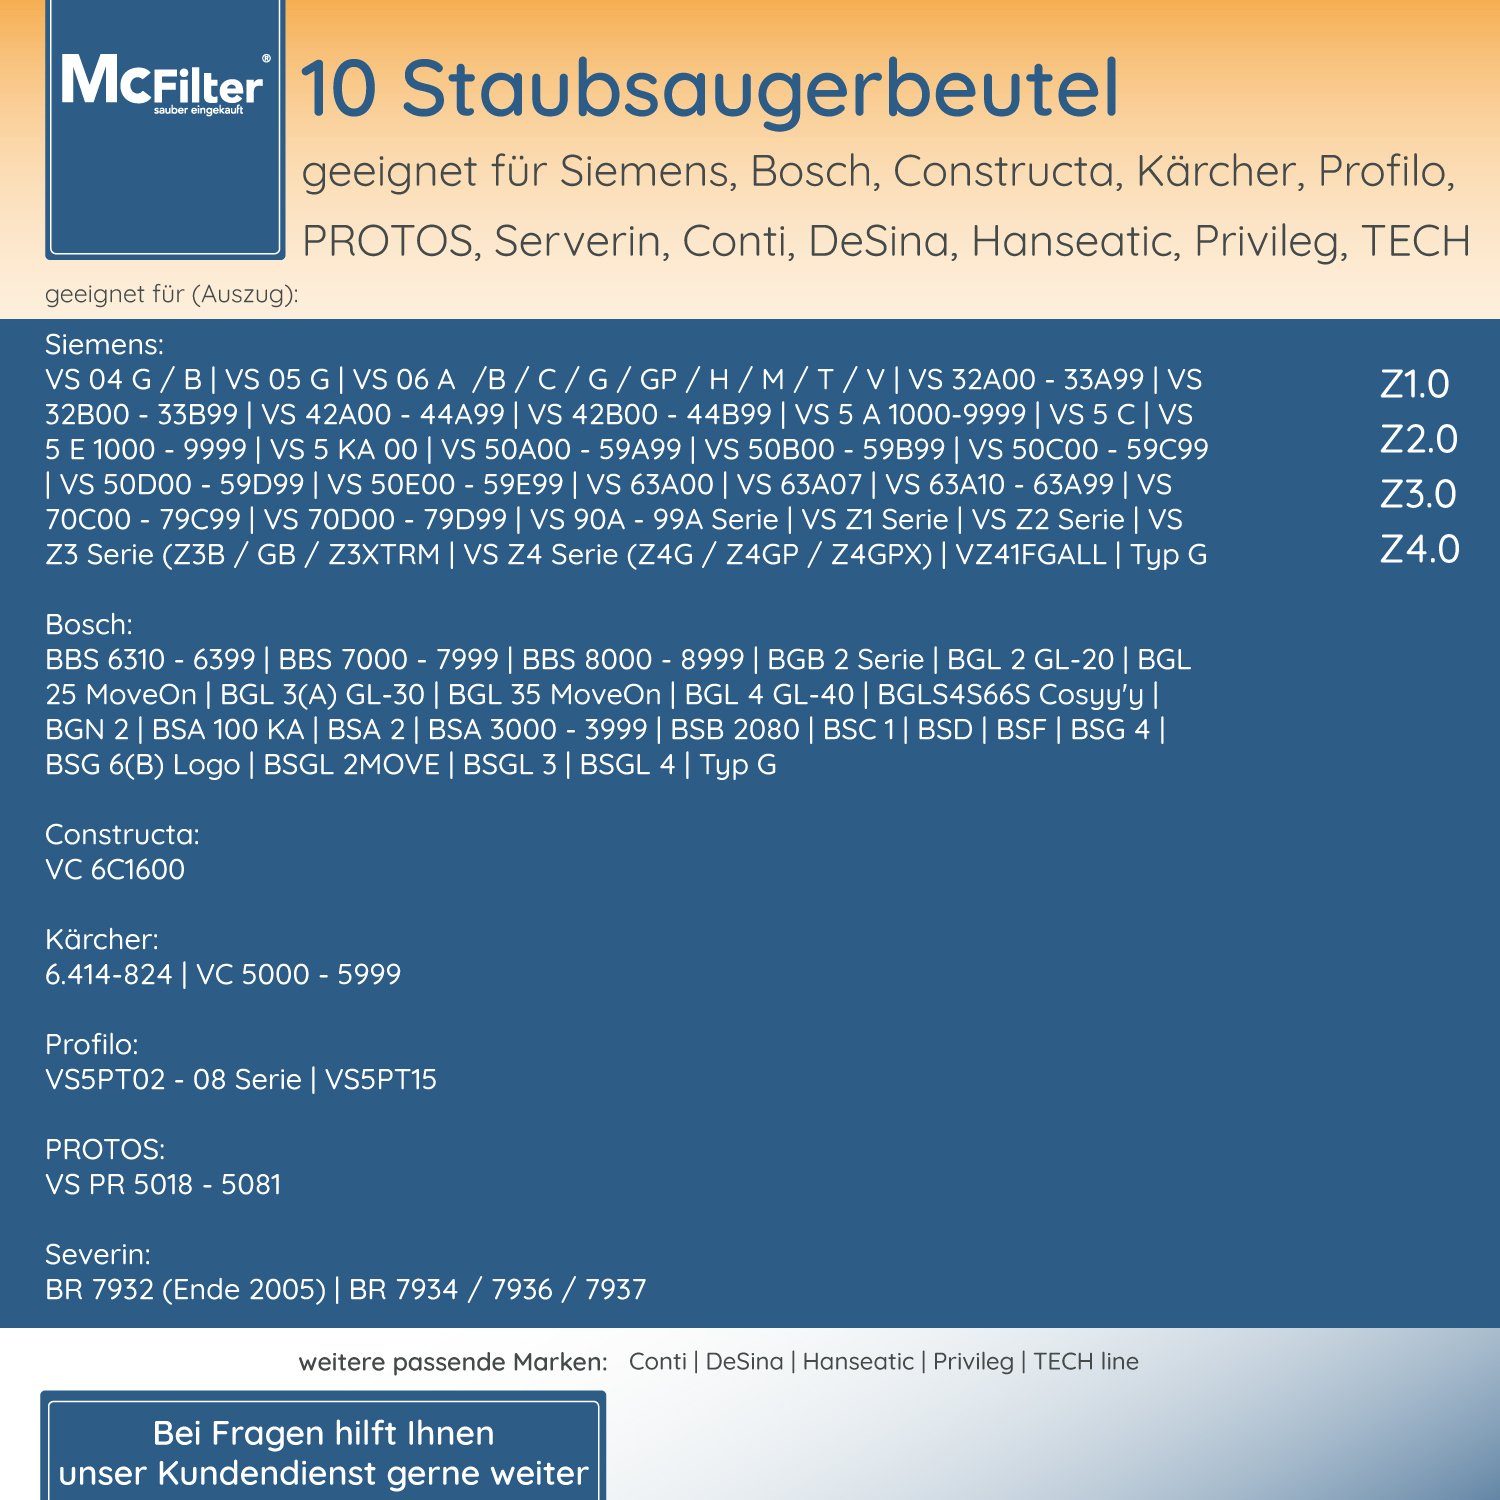 McFilter Staubsaugerbeutel (10 Stück), VS08…, VS06… mit und Siemens St., synchropower passend Baureihe Hygieneverschluss, inkl. Filter für Staubbeutel Baureihe 10 5-lagiger